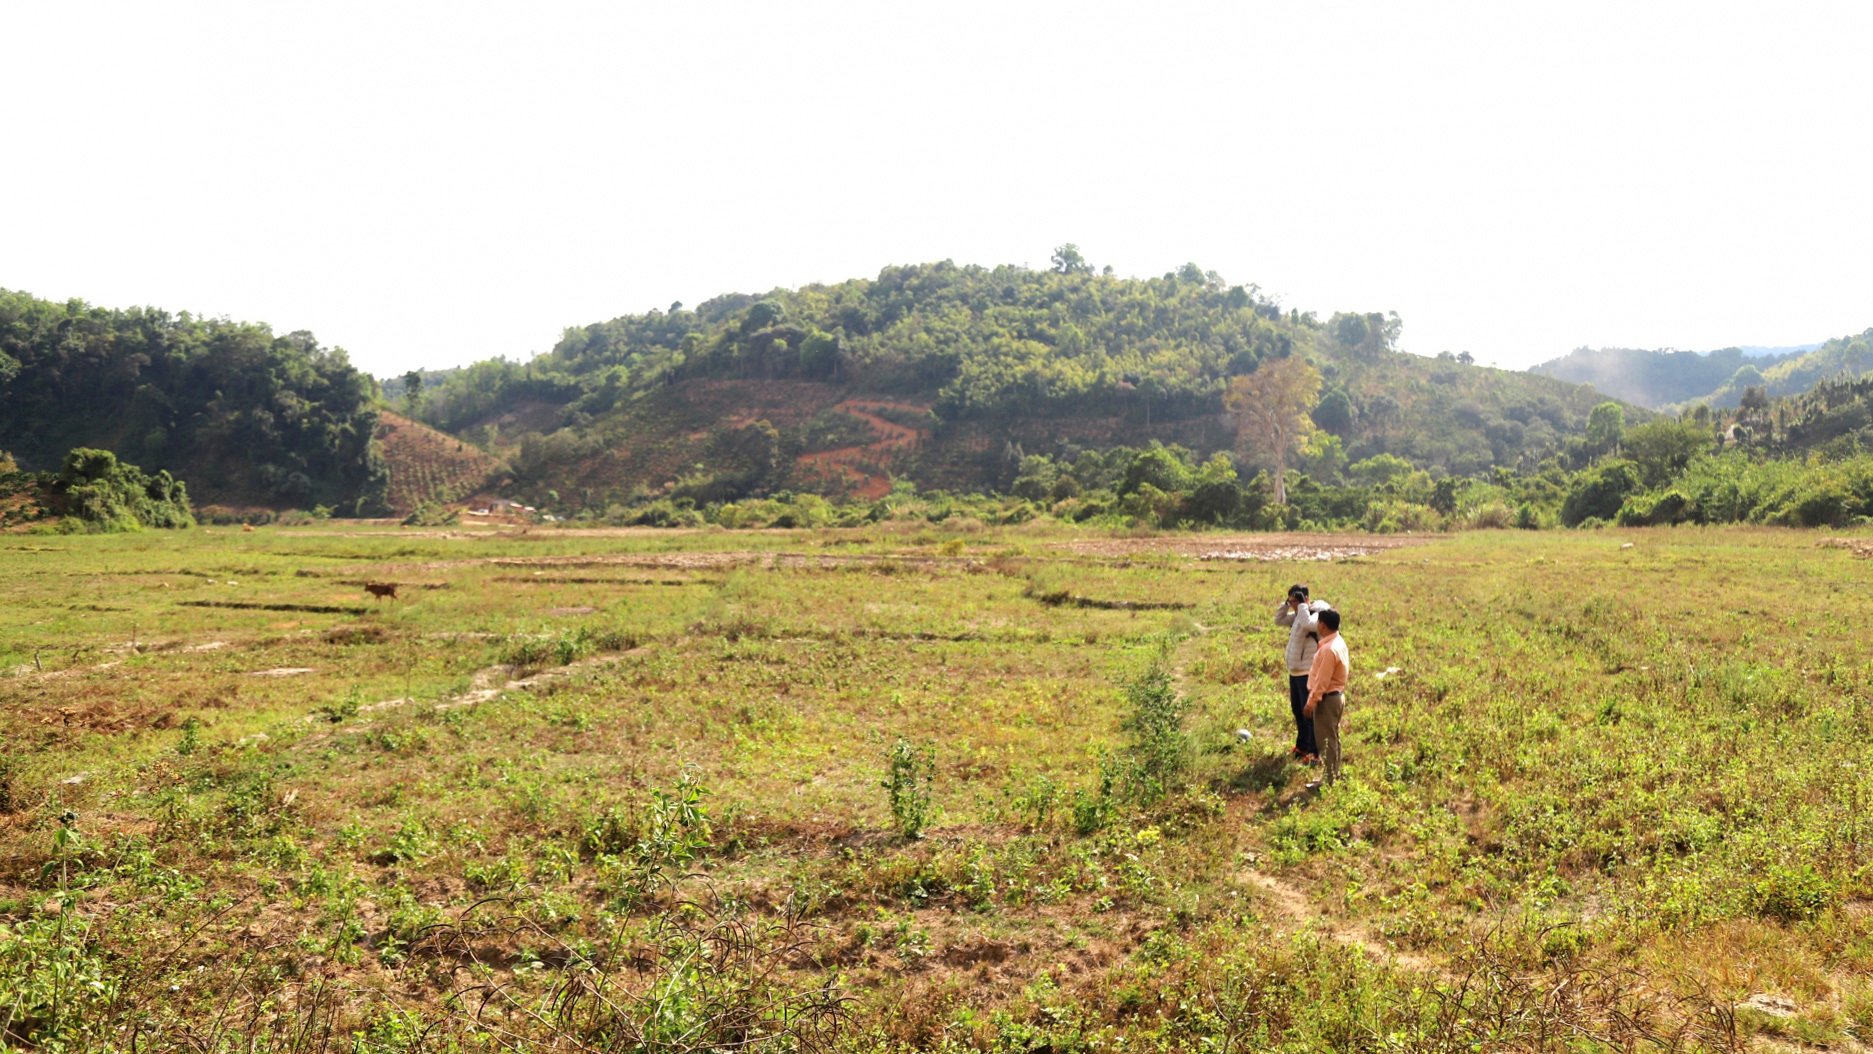 Hơn 40 ha đất sản xuất lúa nước tại xã Sơn Điền phải bỏ hoang vì thiếu nước do hạn hán